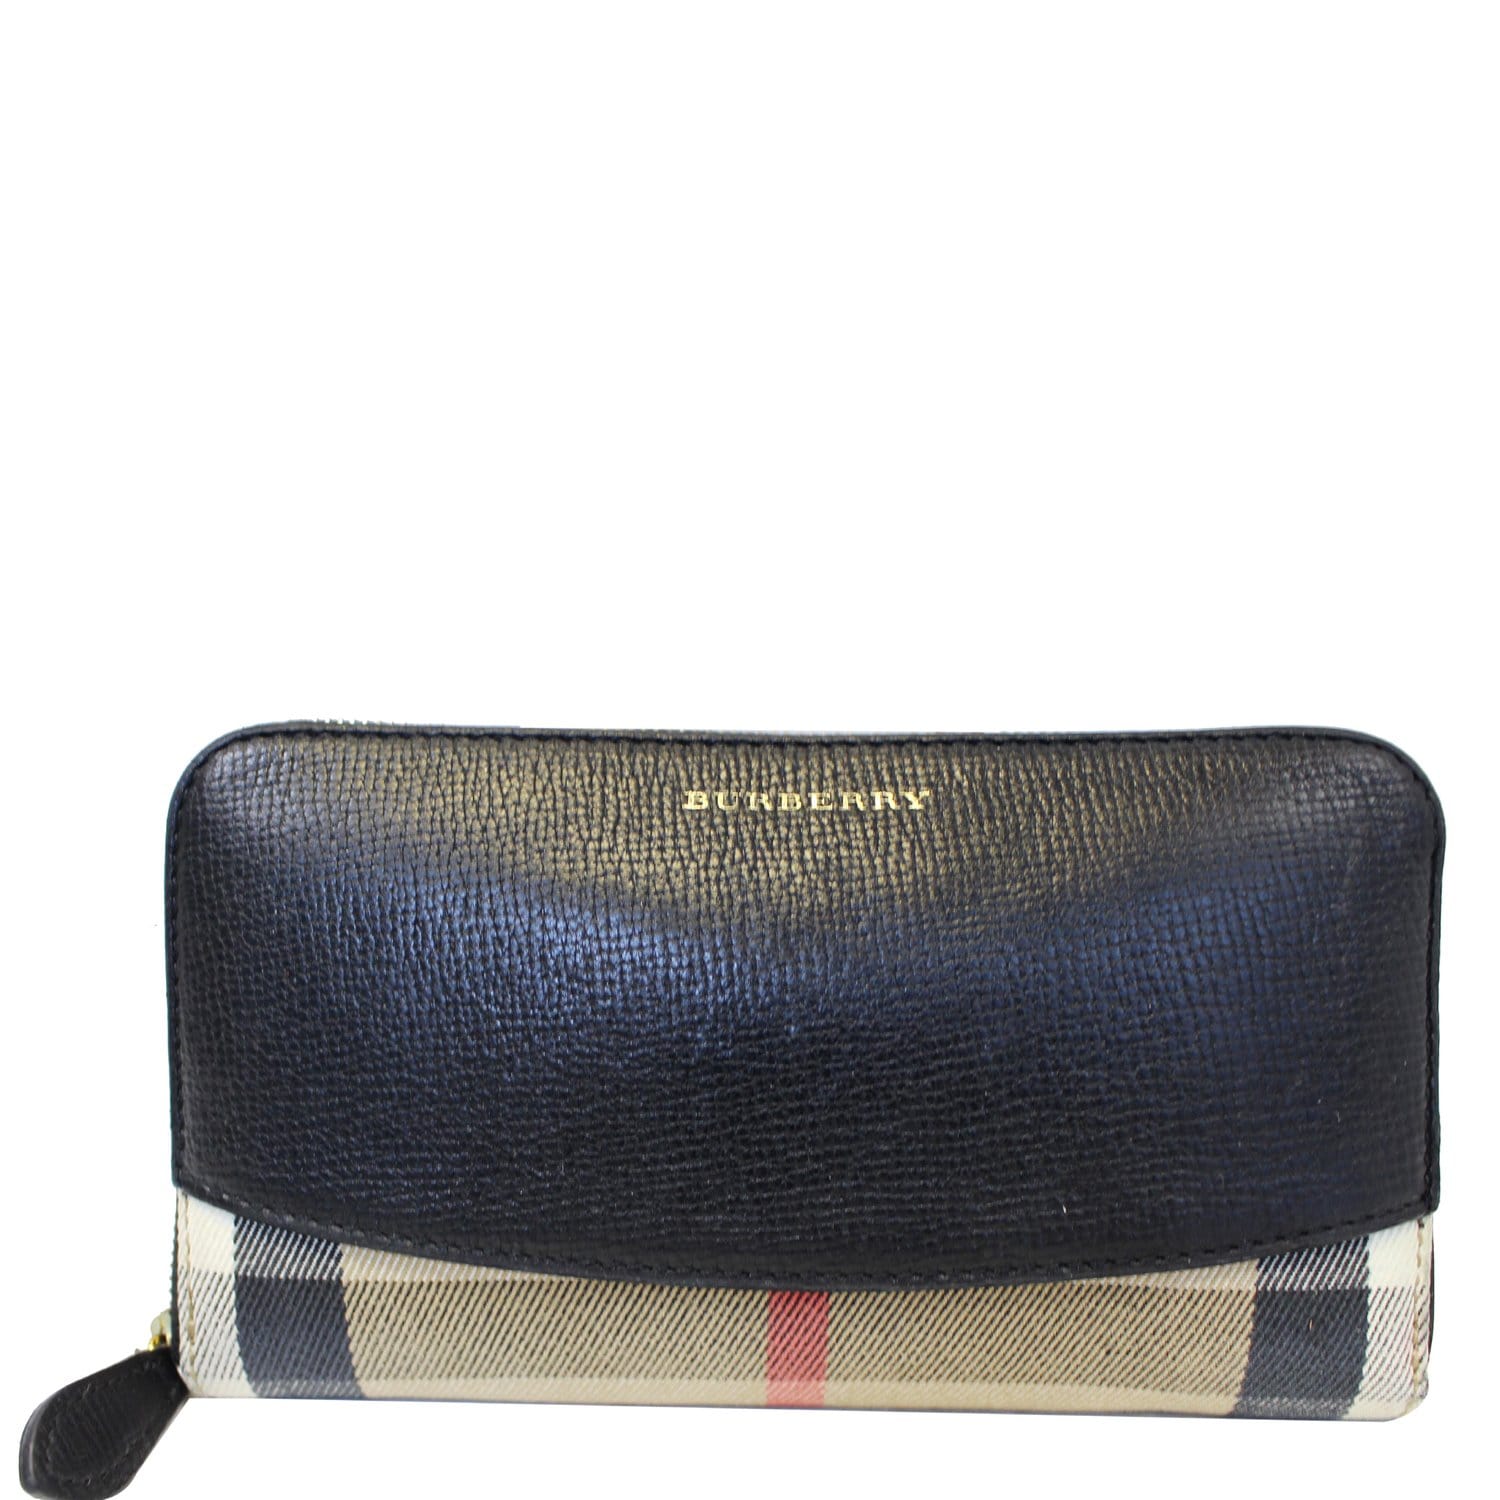 Burberry Women's Black Pebbled Leather Wallet Shoulder Bag